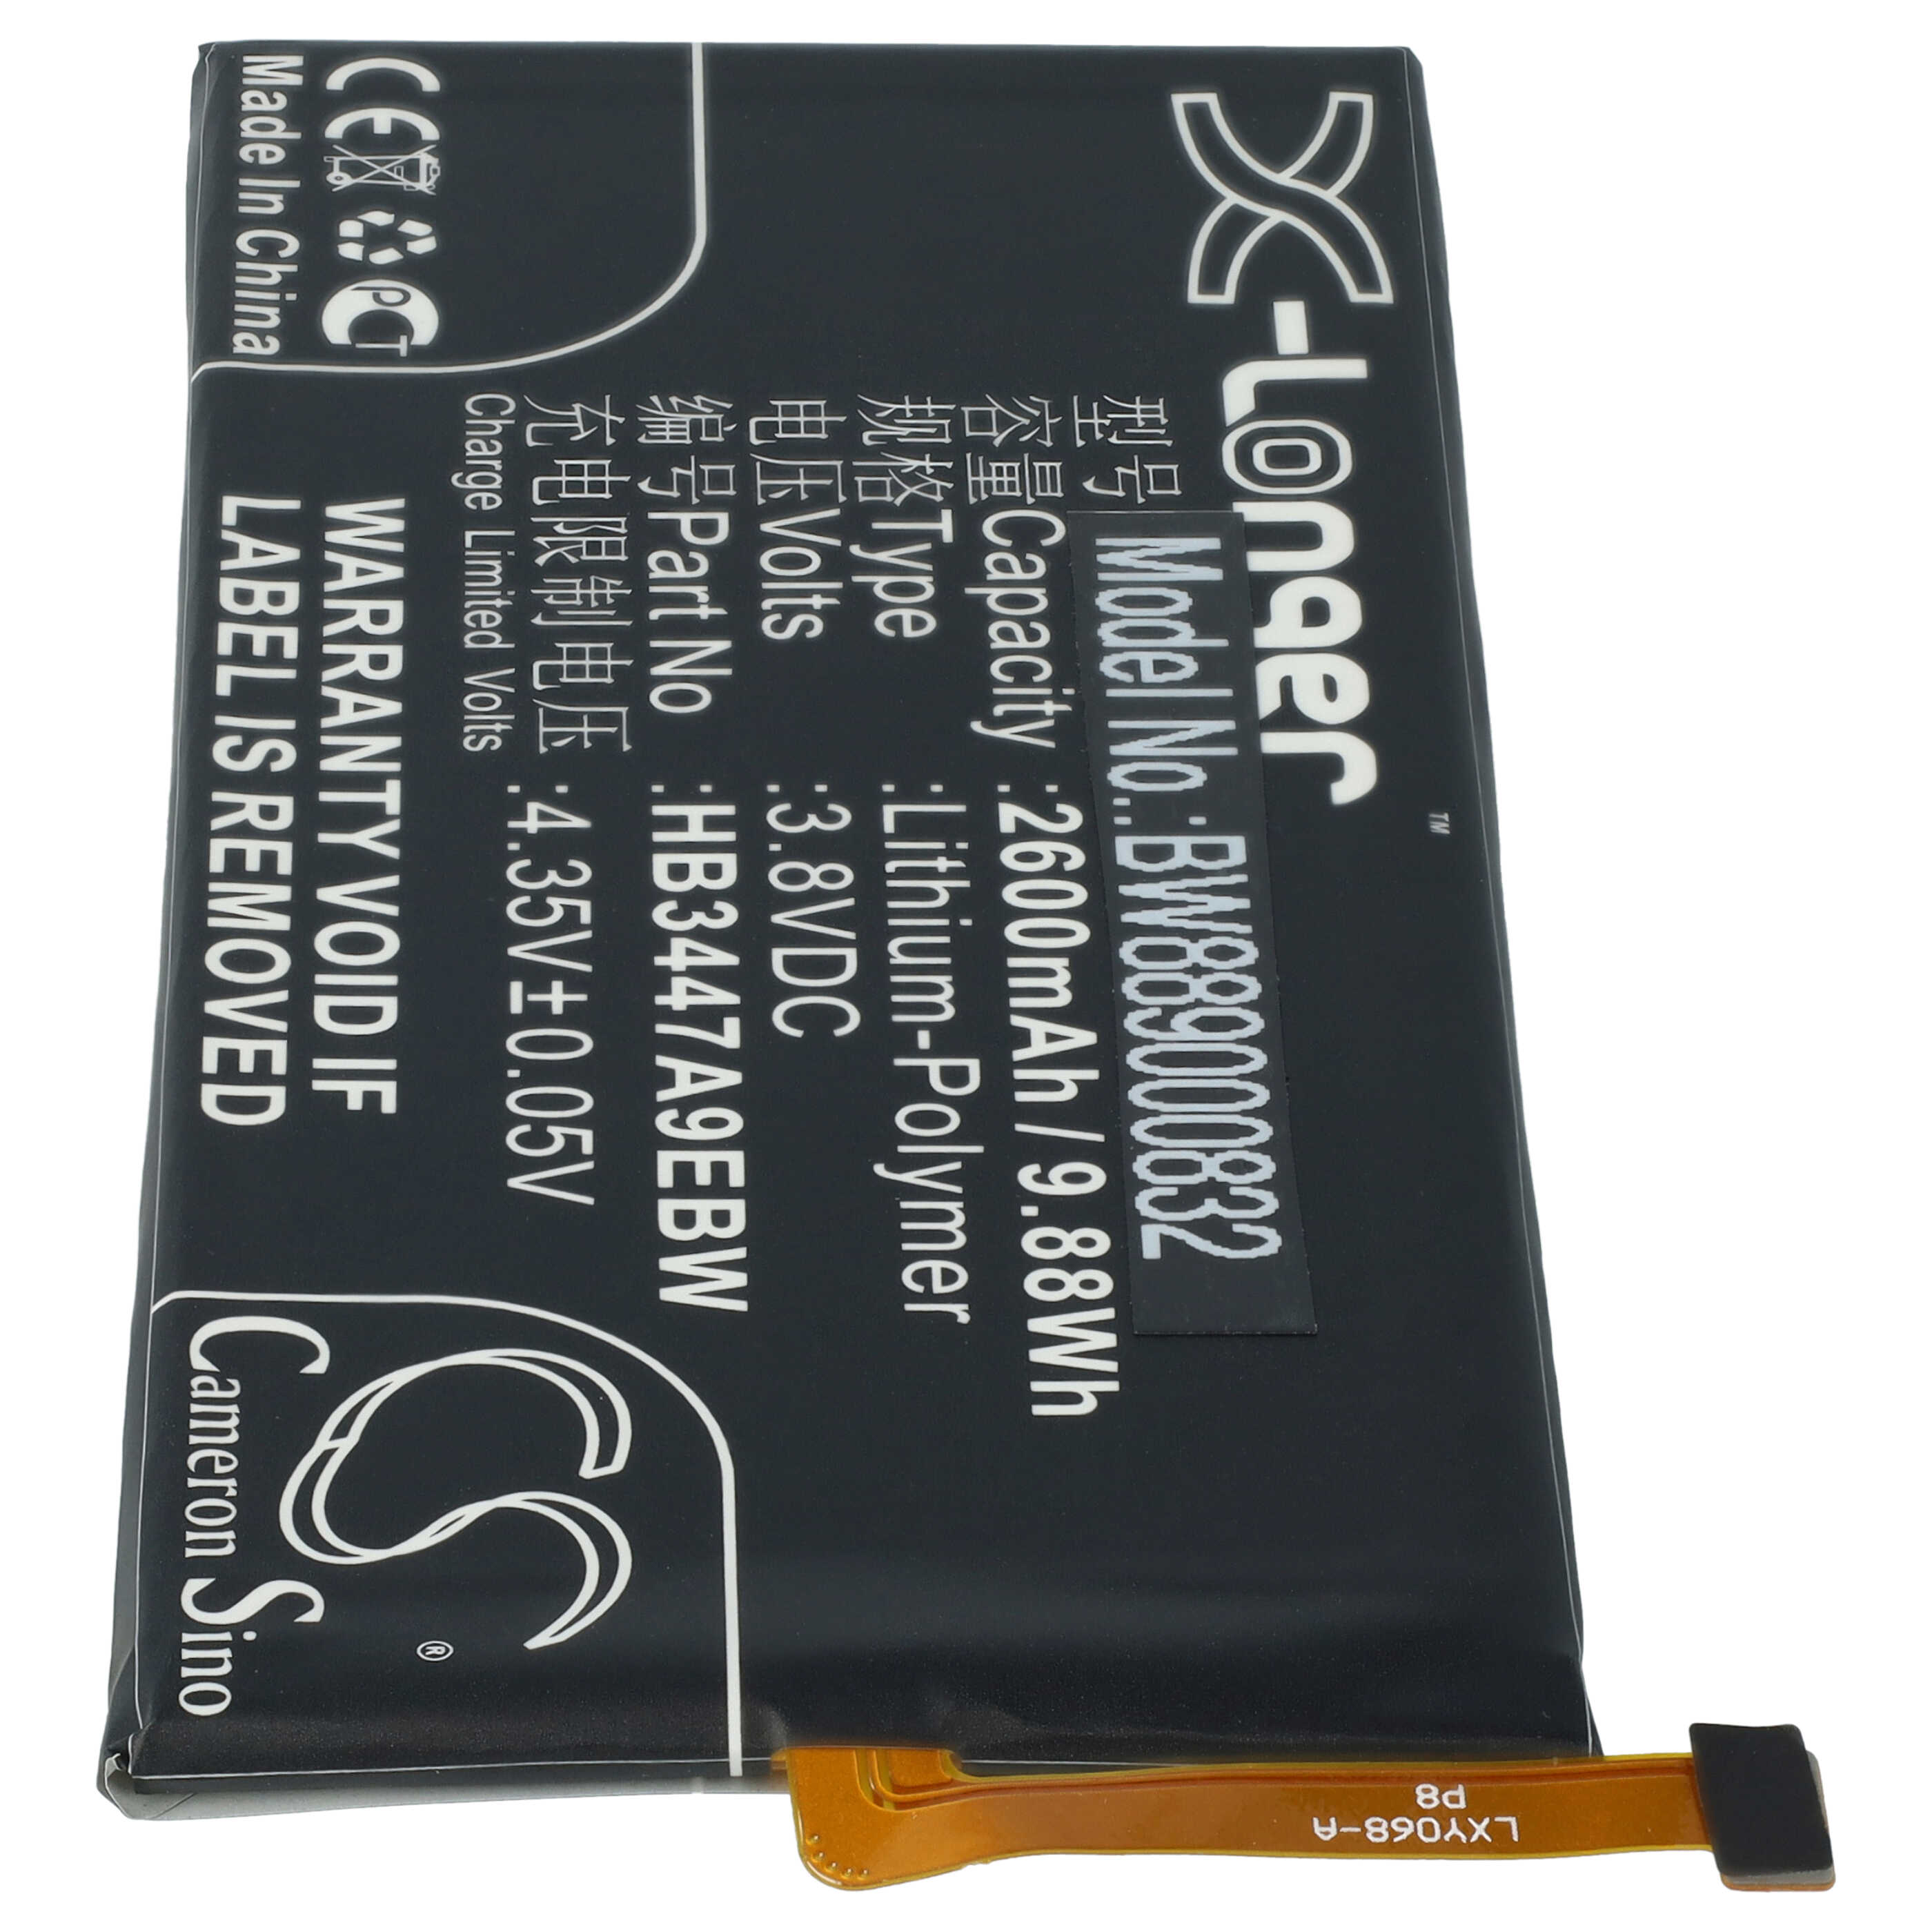 Batterie remplace Huawei HB3447A9EBW, HB3447A9EBC pour téléphone portable - 2600mAh, 3,8V, Li-polymère